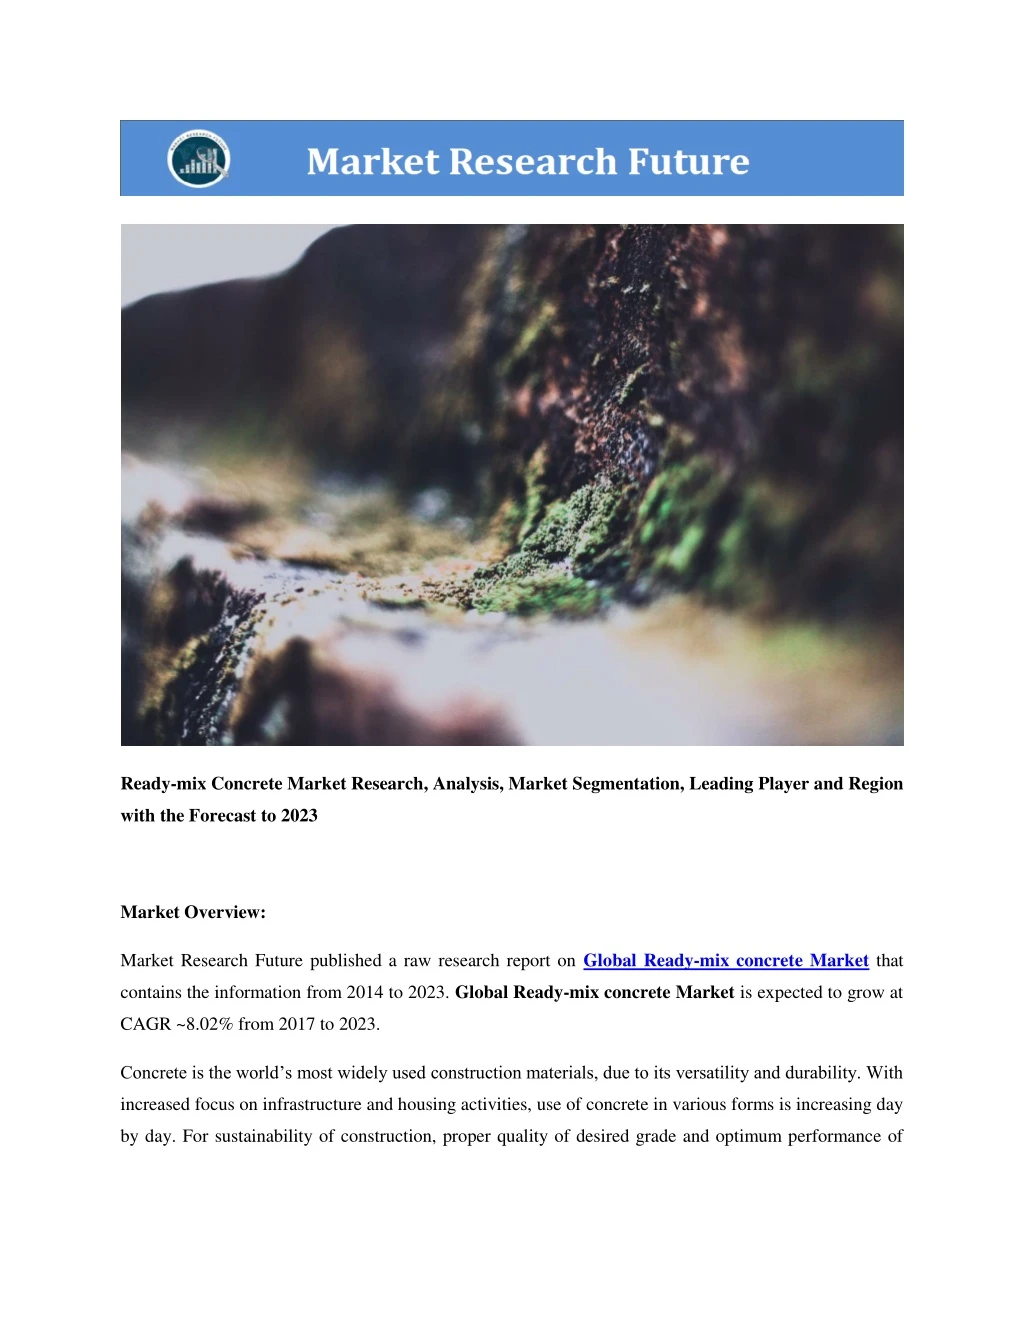 ready mix concrete market research analysis